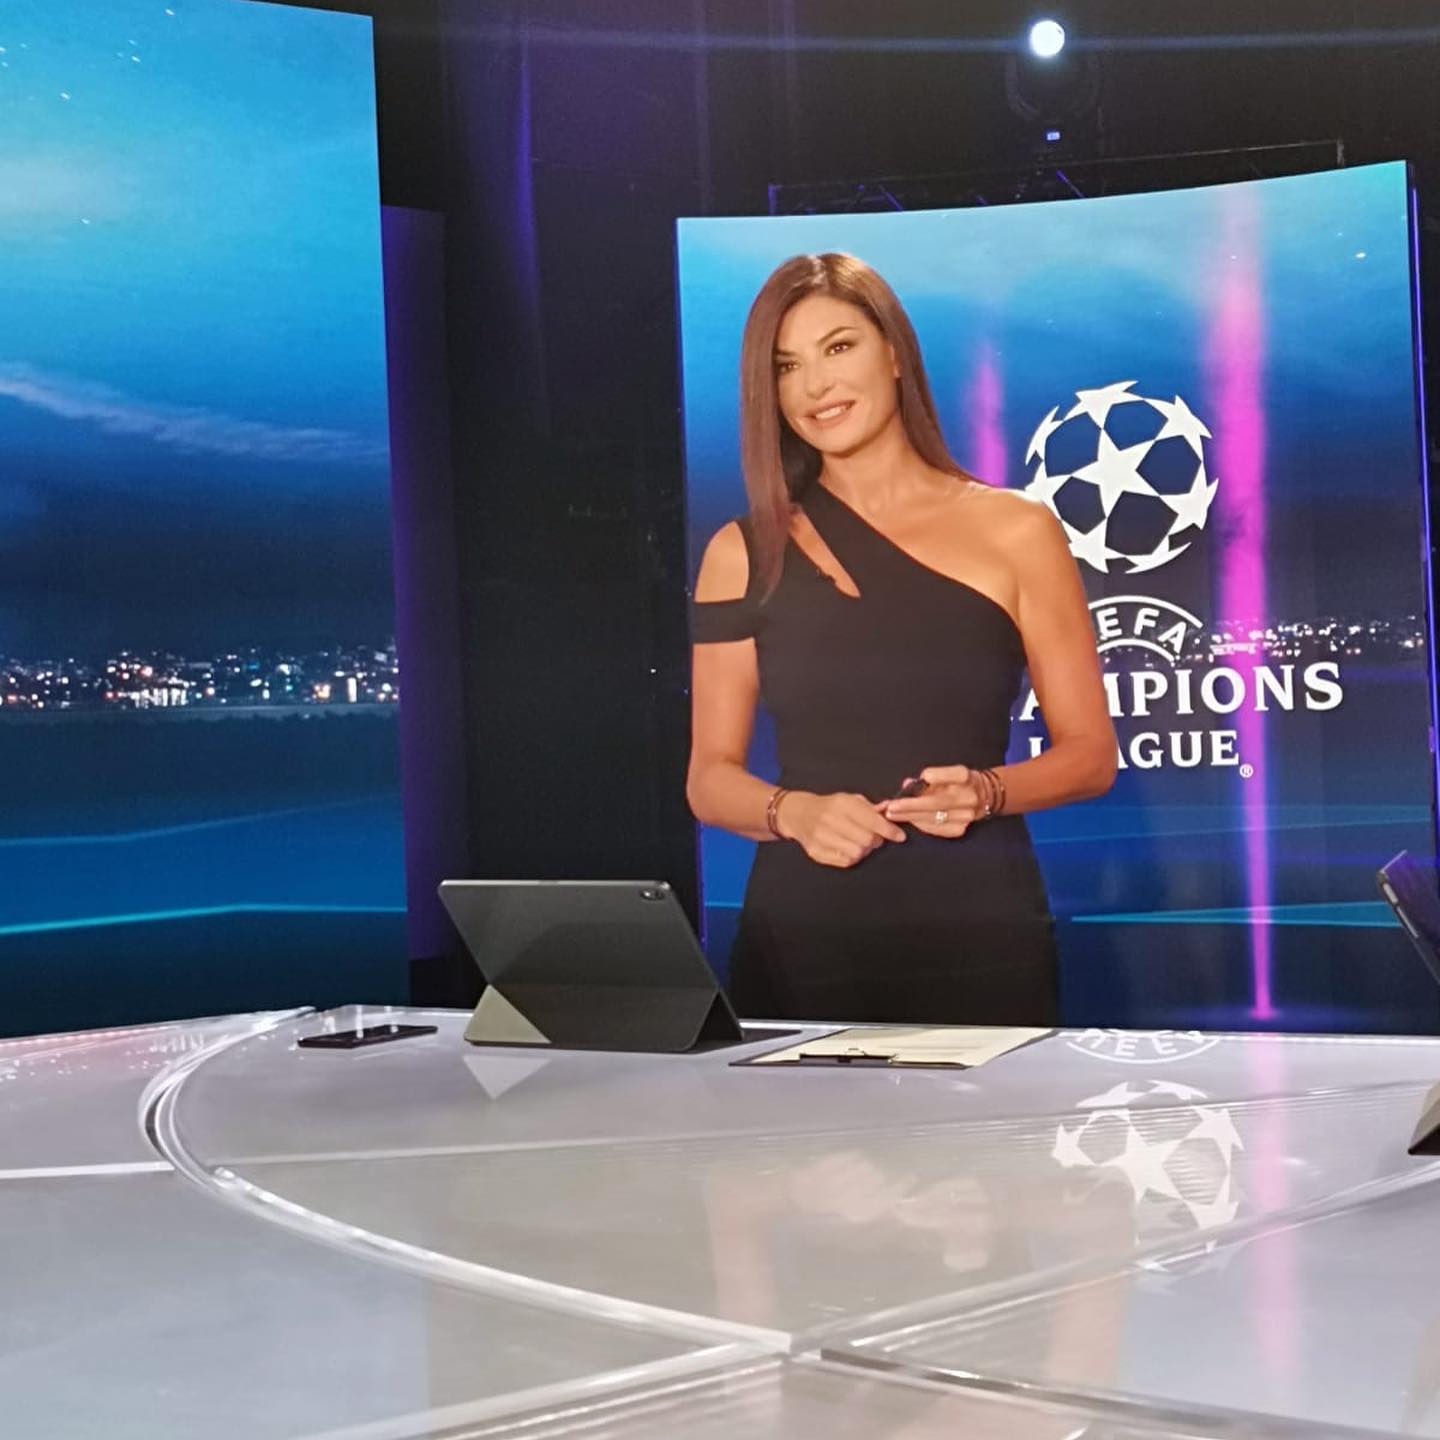 Während ihrer Medienkarriere hat sie über die Champions League berichtet